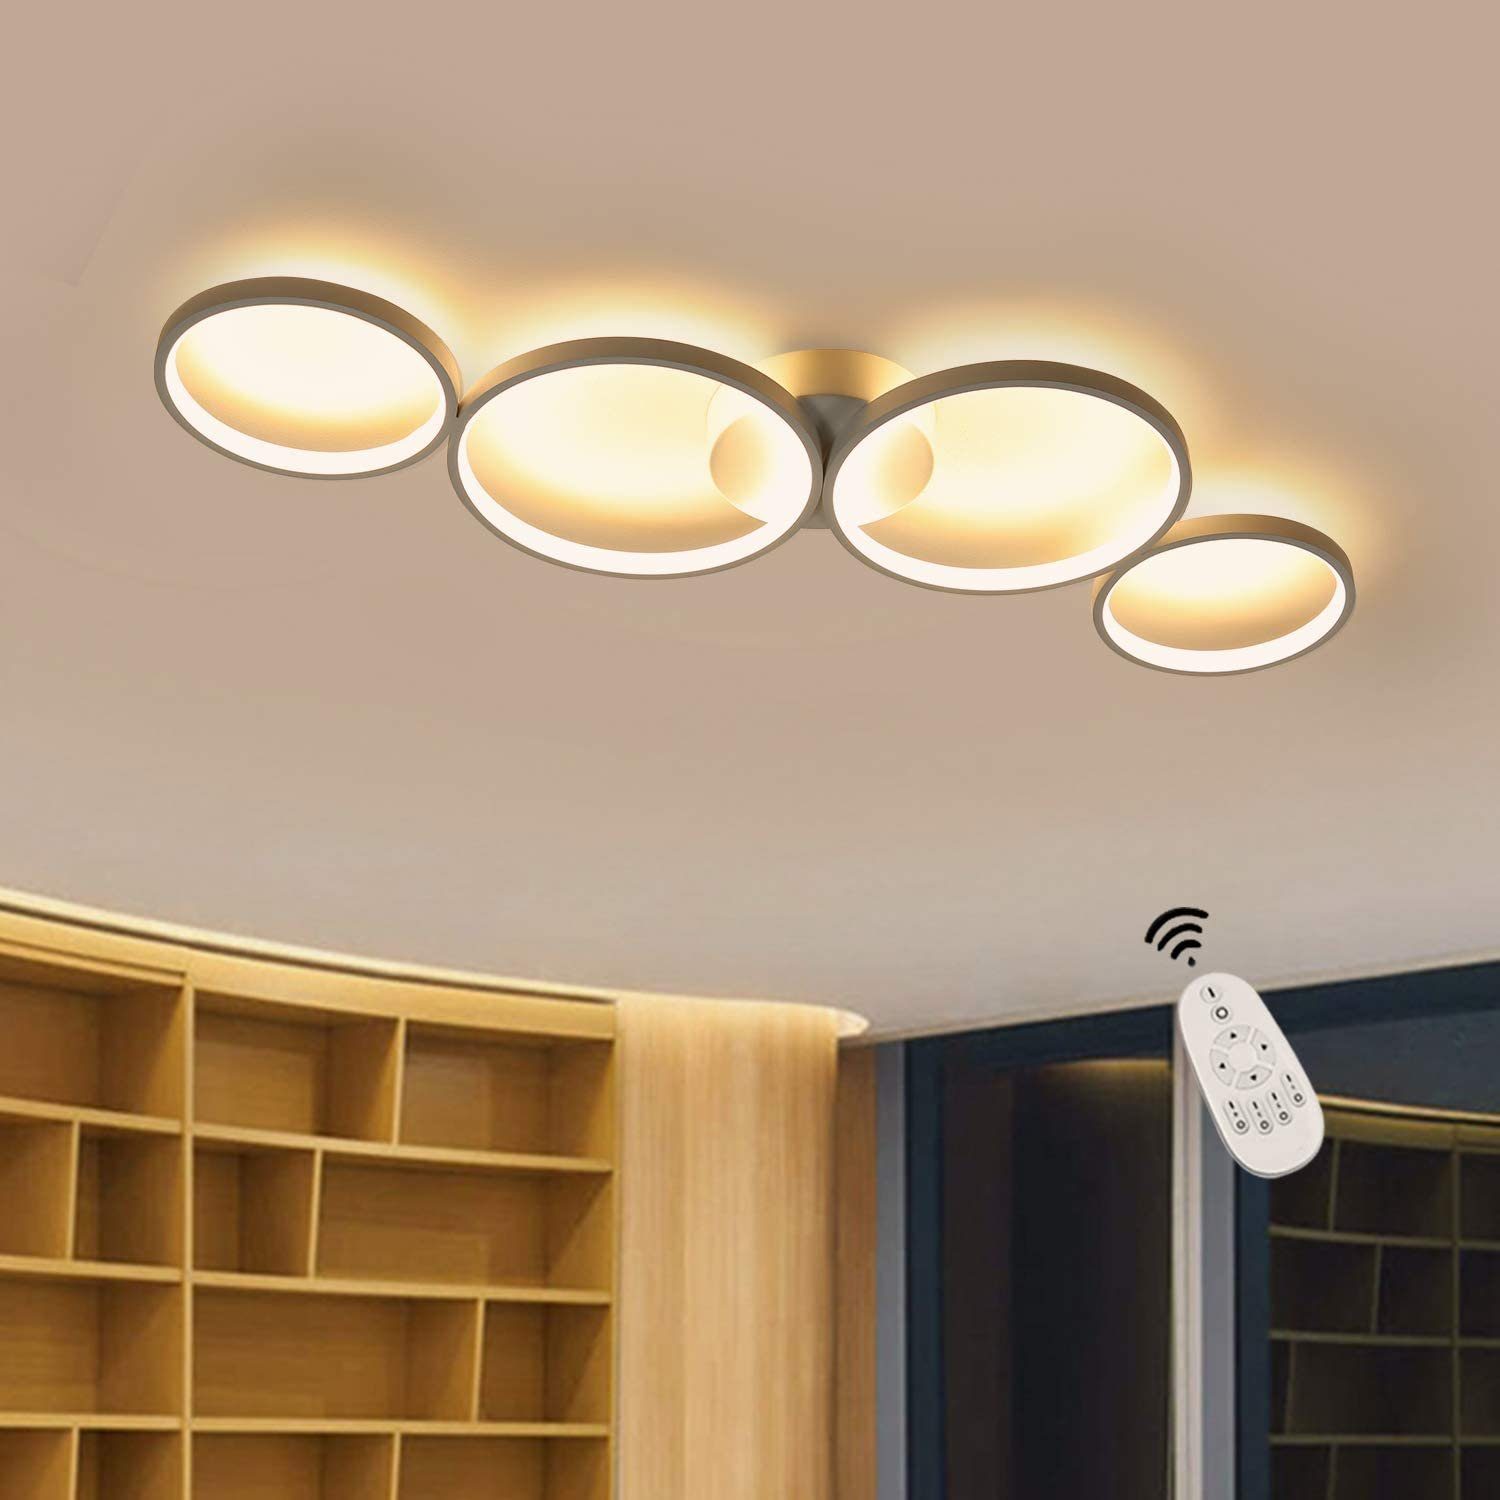 ZMH LED Deckenleuchte »LED Deckenlampe dimmbar Designlampe für Schlafzimmer  Wohnzimmer Küchen Badezimmer Kinderzimmer« online kaufen | OTTO